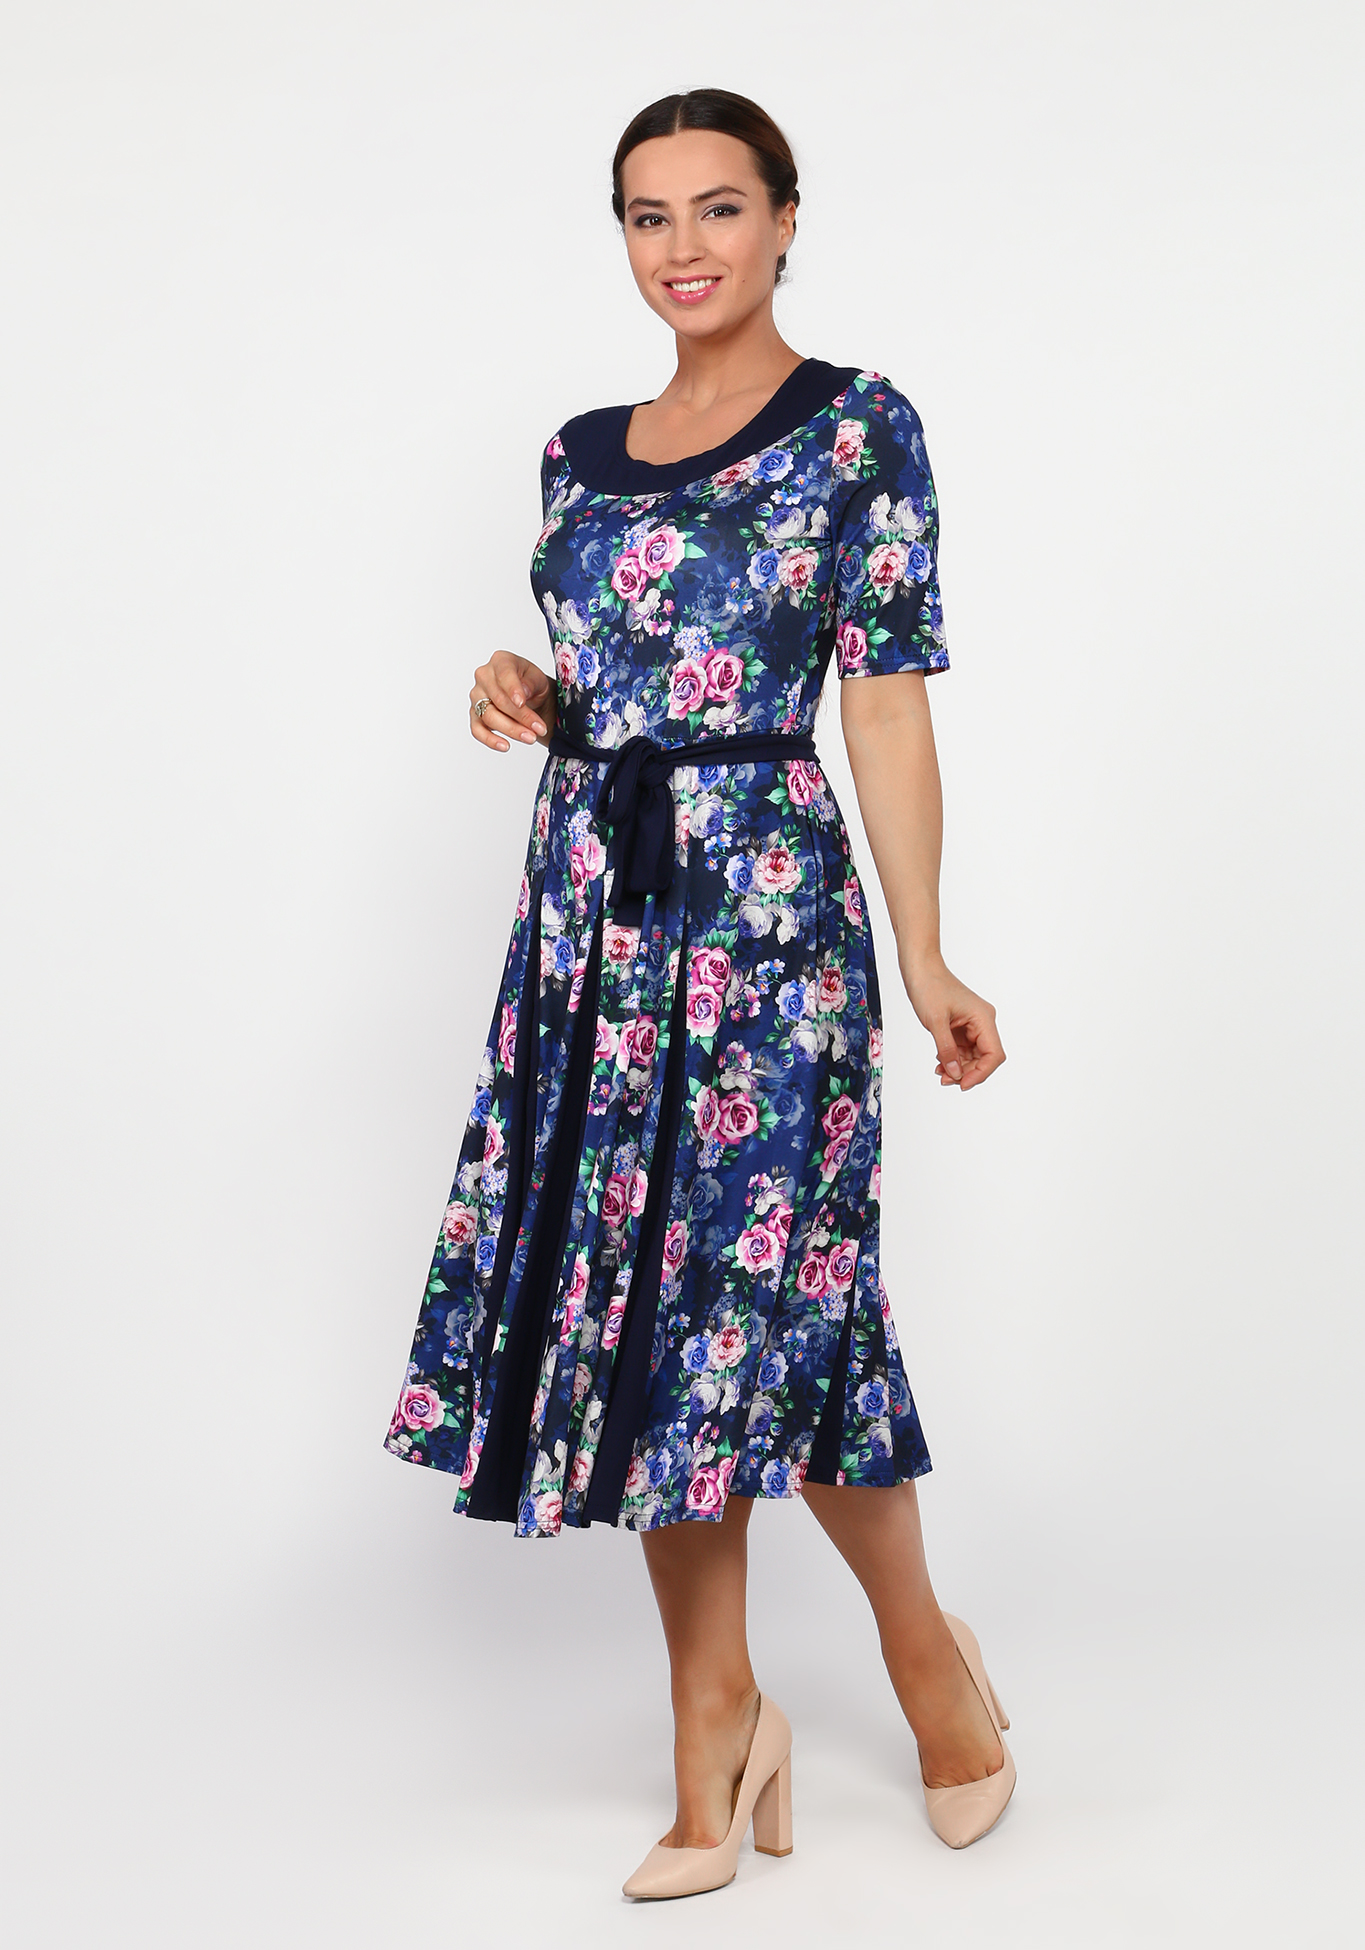 Платье с контрастным поясом и принтом "розы" Bianka Modeno, размер 46 - фото 1